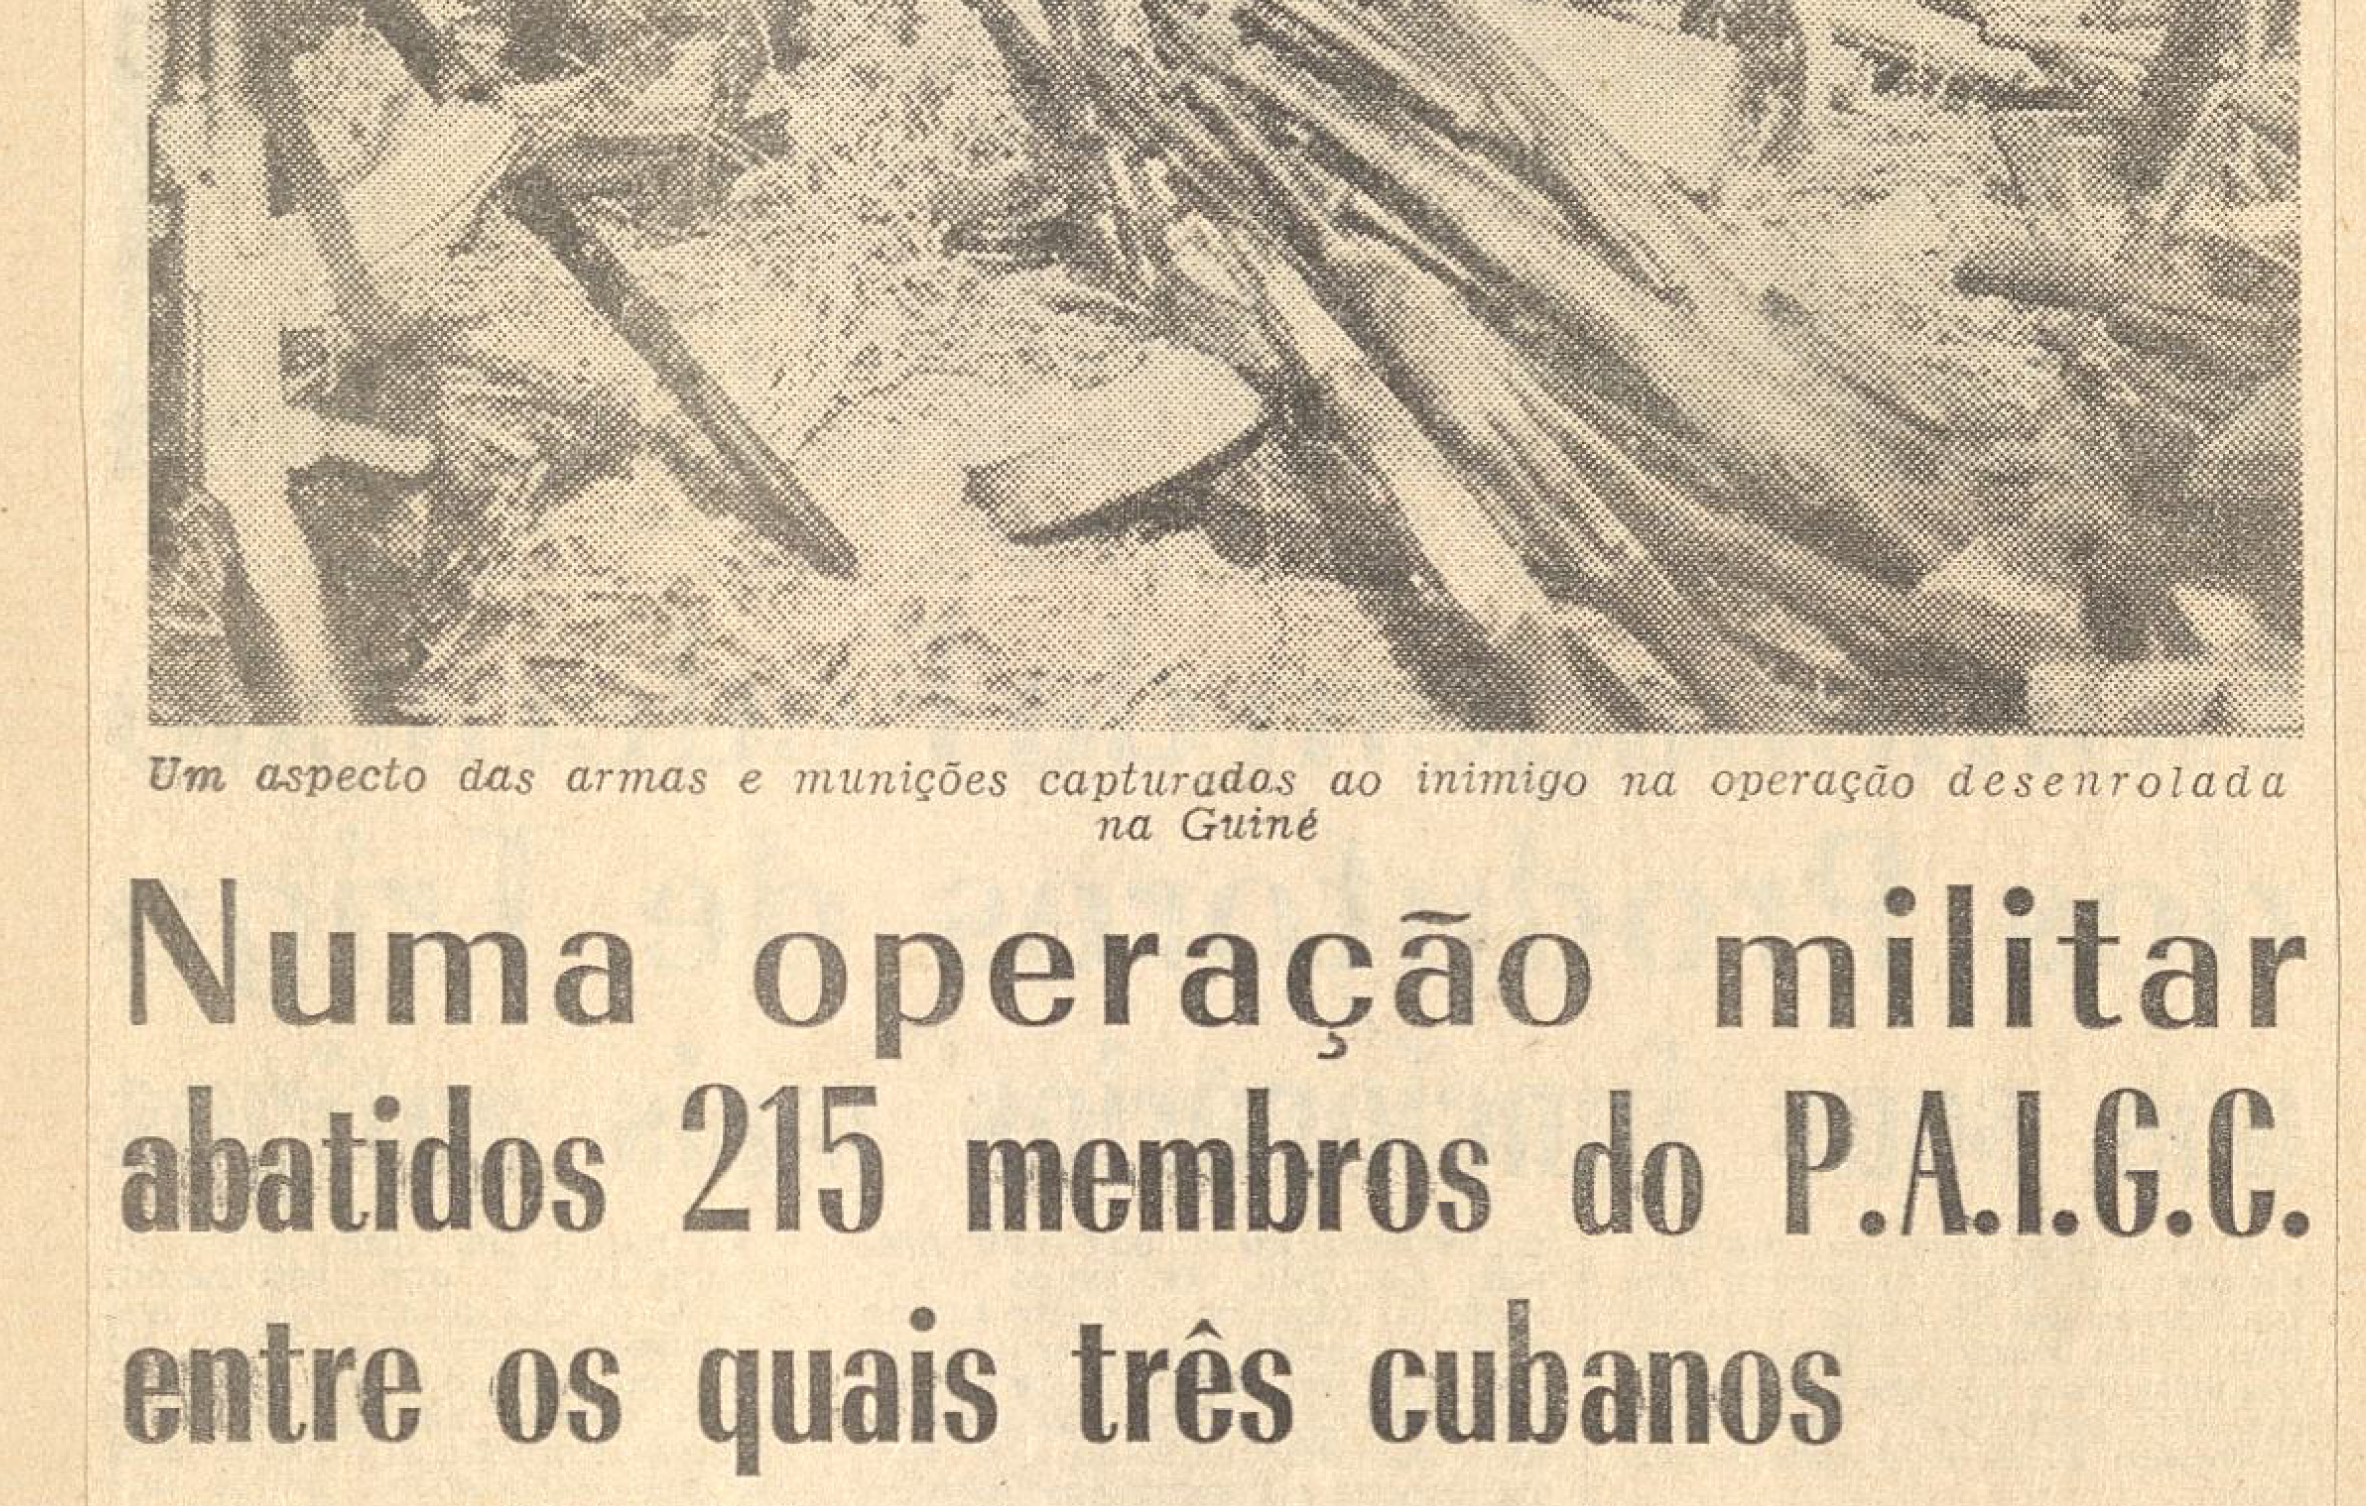 "Numa operação militar abatidos 215 membros do PAIGC"